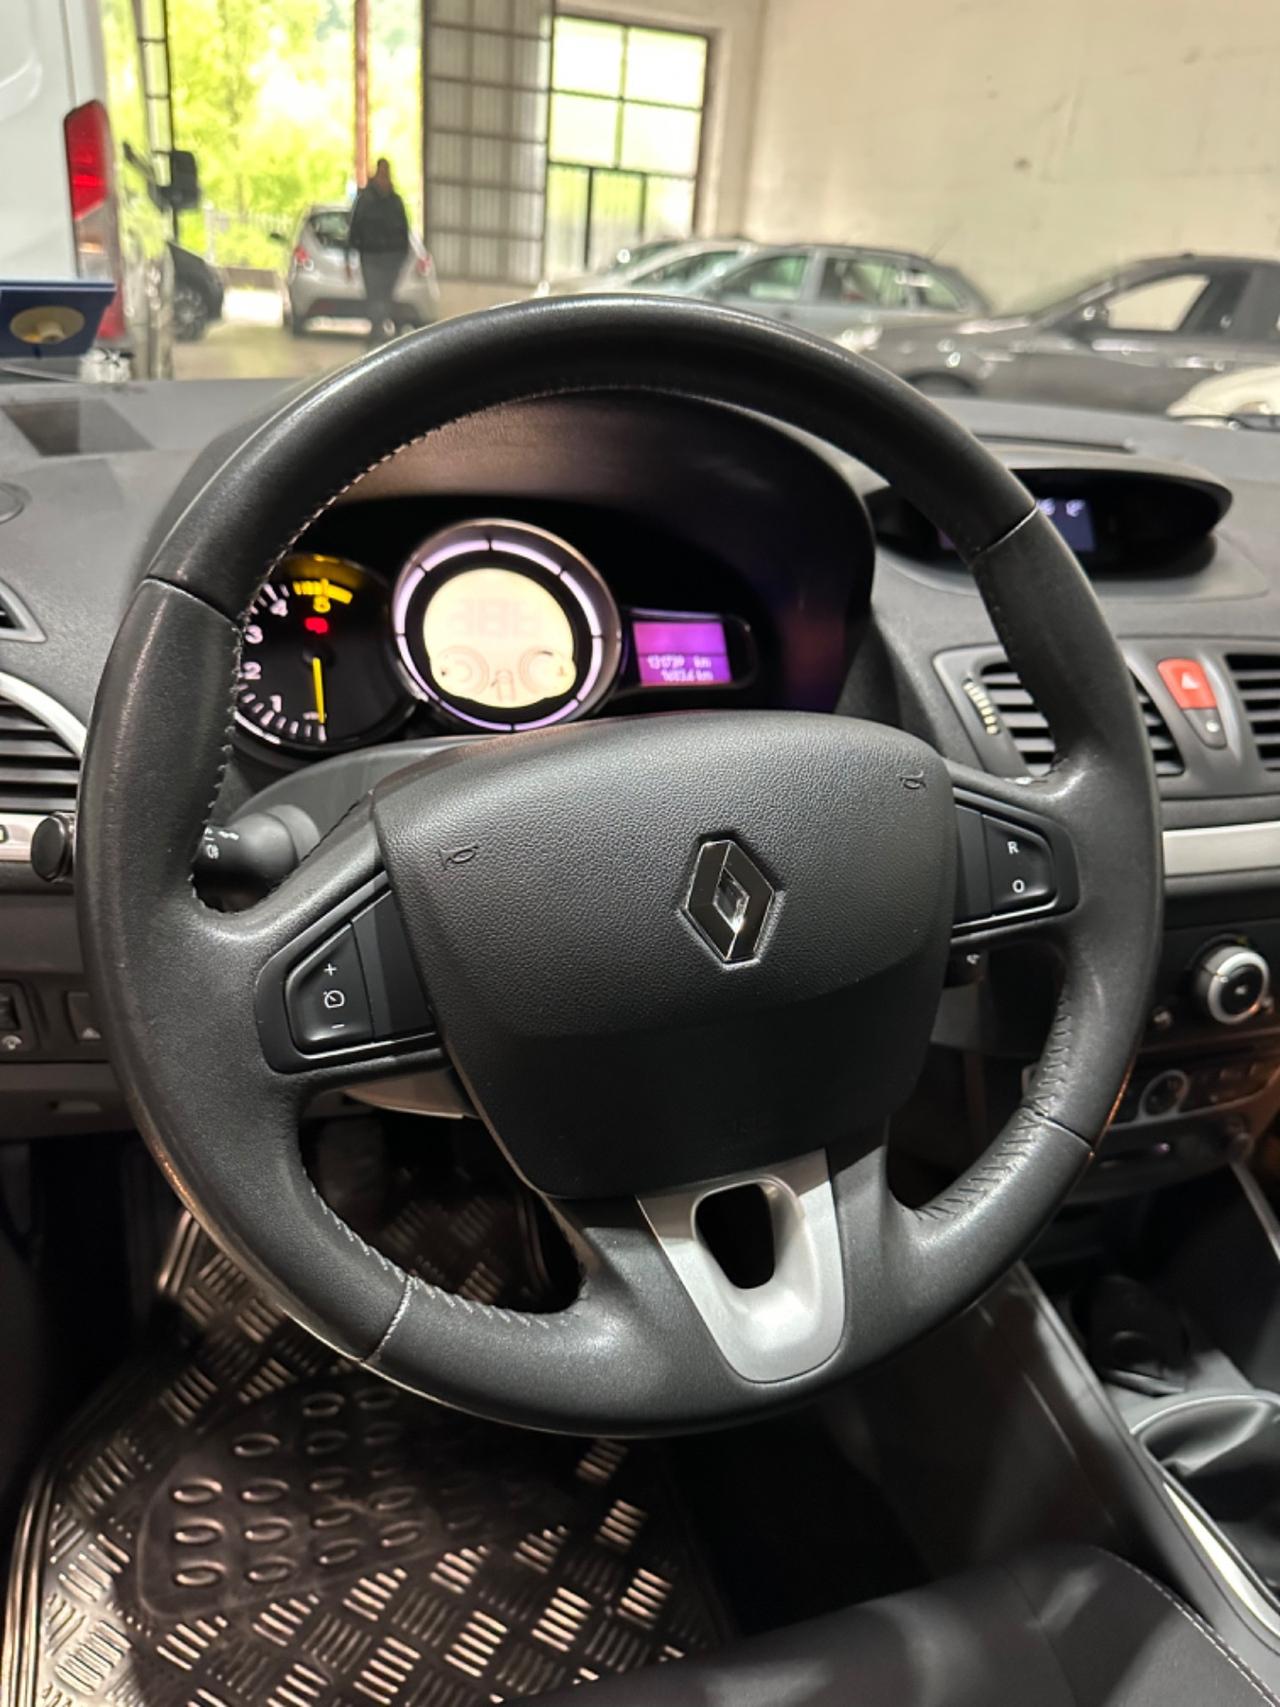 Renault MÈGANE 1.5 dCi 110CV DYNAMIQUE EU5 KMCERT UNICOPR